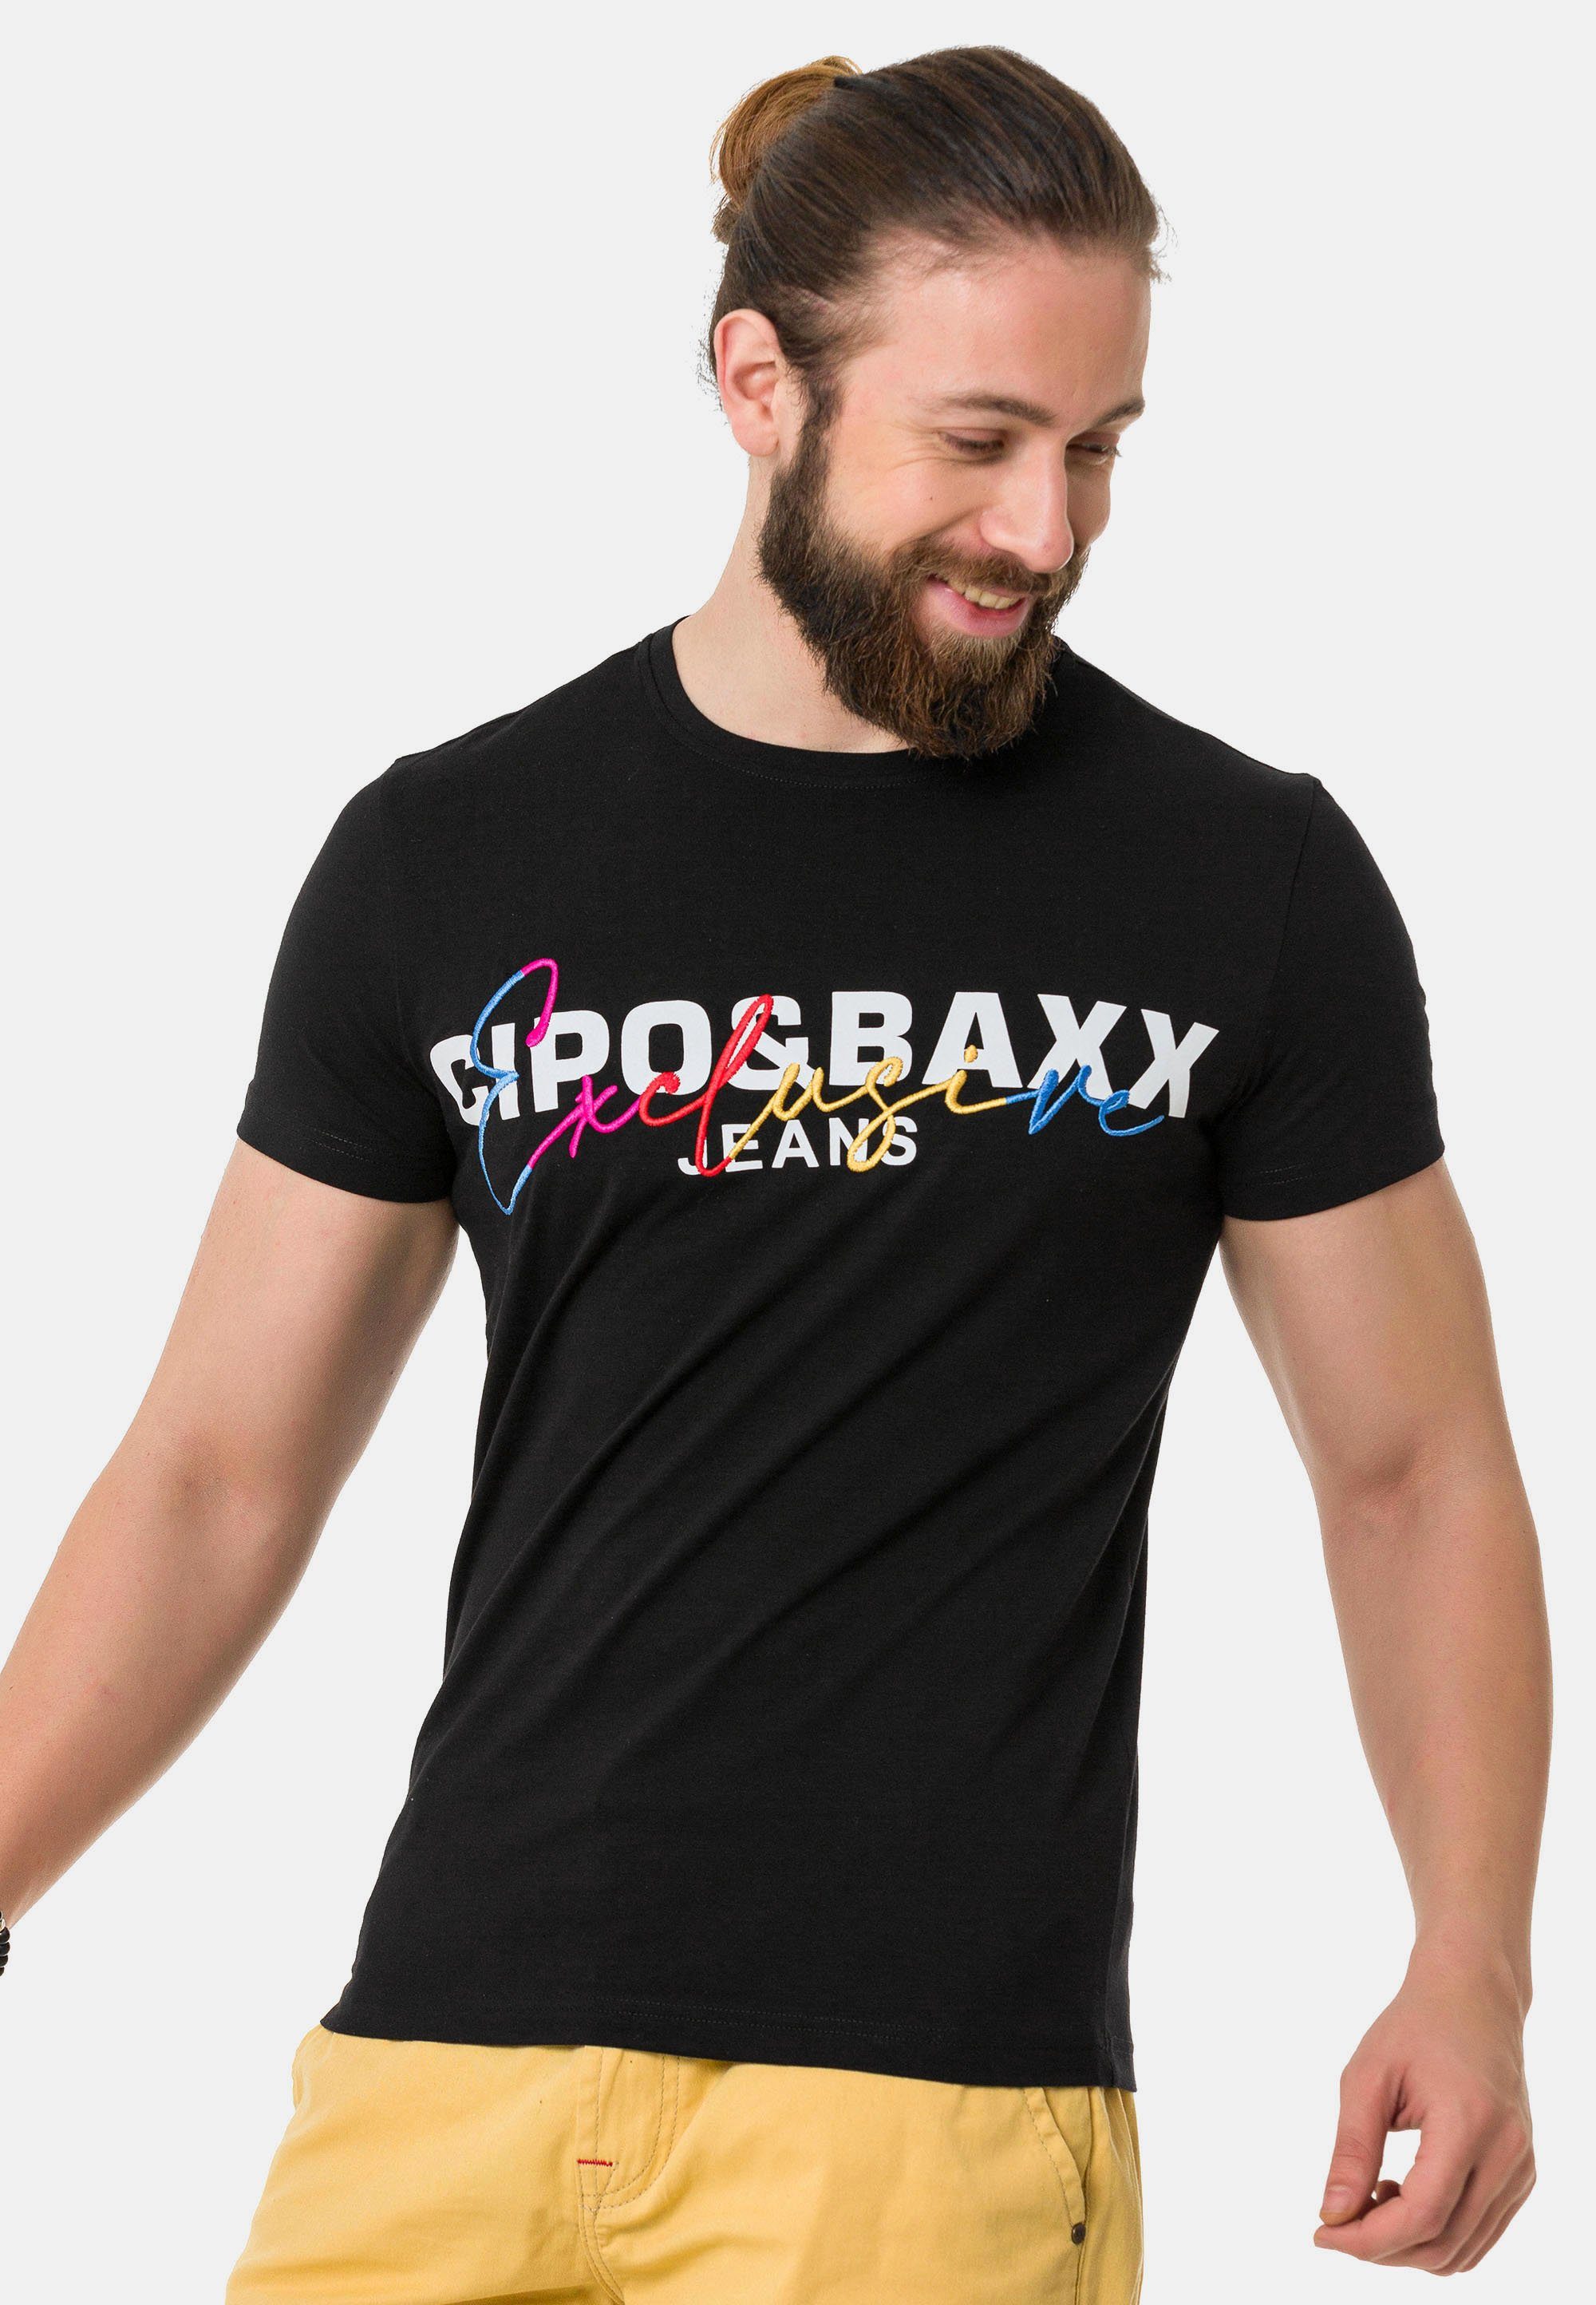 schwarz mit Baxx Markenprint & T-Shirt Cipo